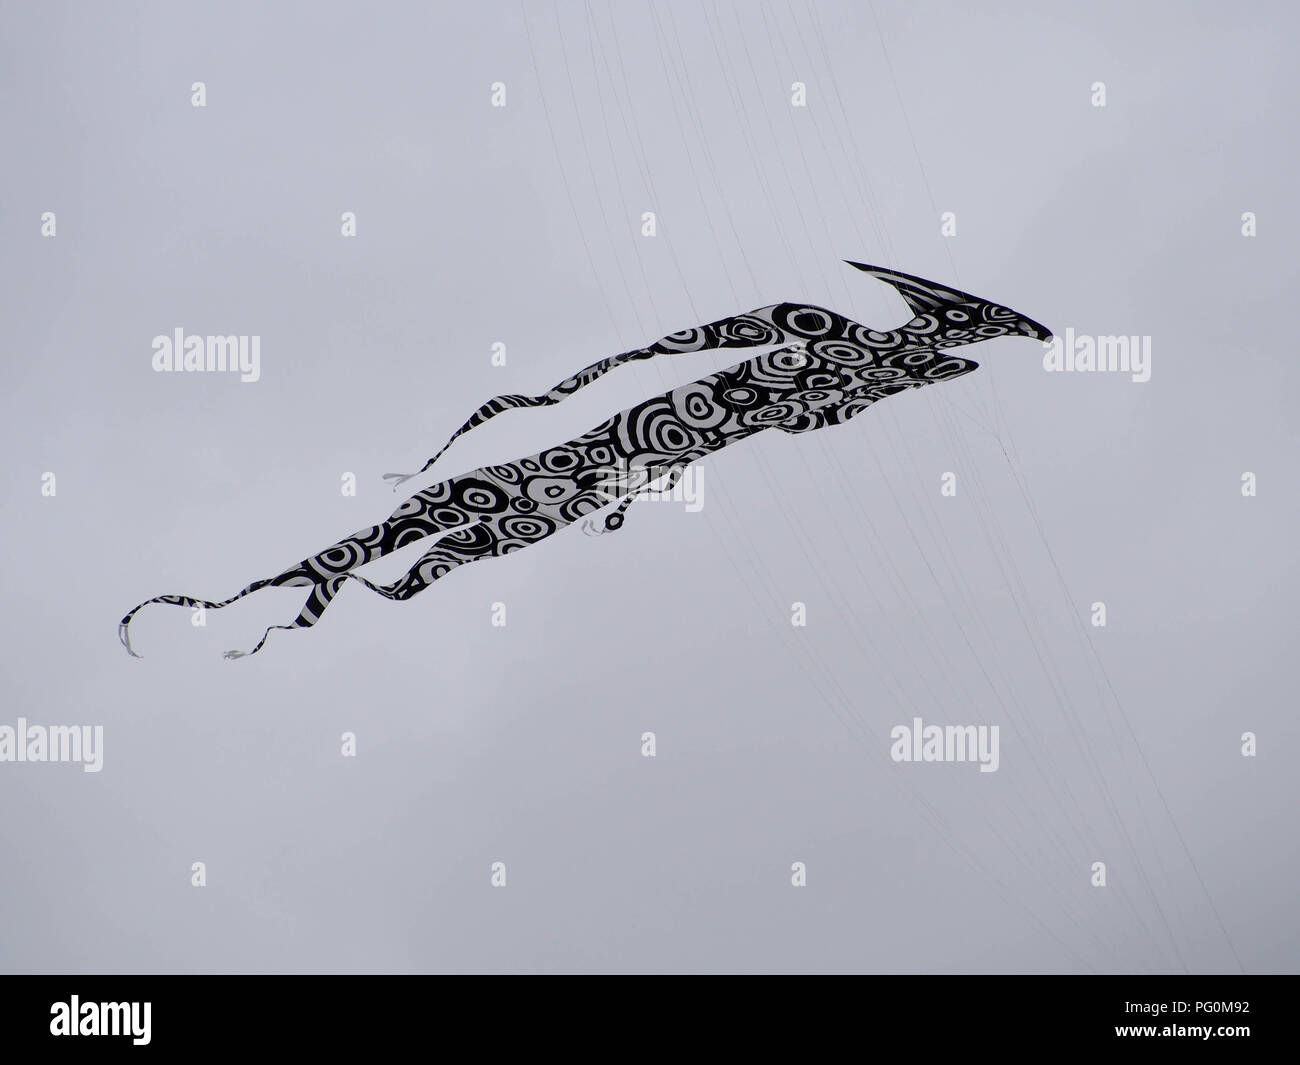 Einen Drachen in der Form eines menschlichen Fliegen gegen einen bewölkten grauen Himmel Stockfoto